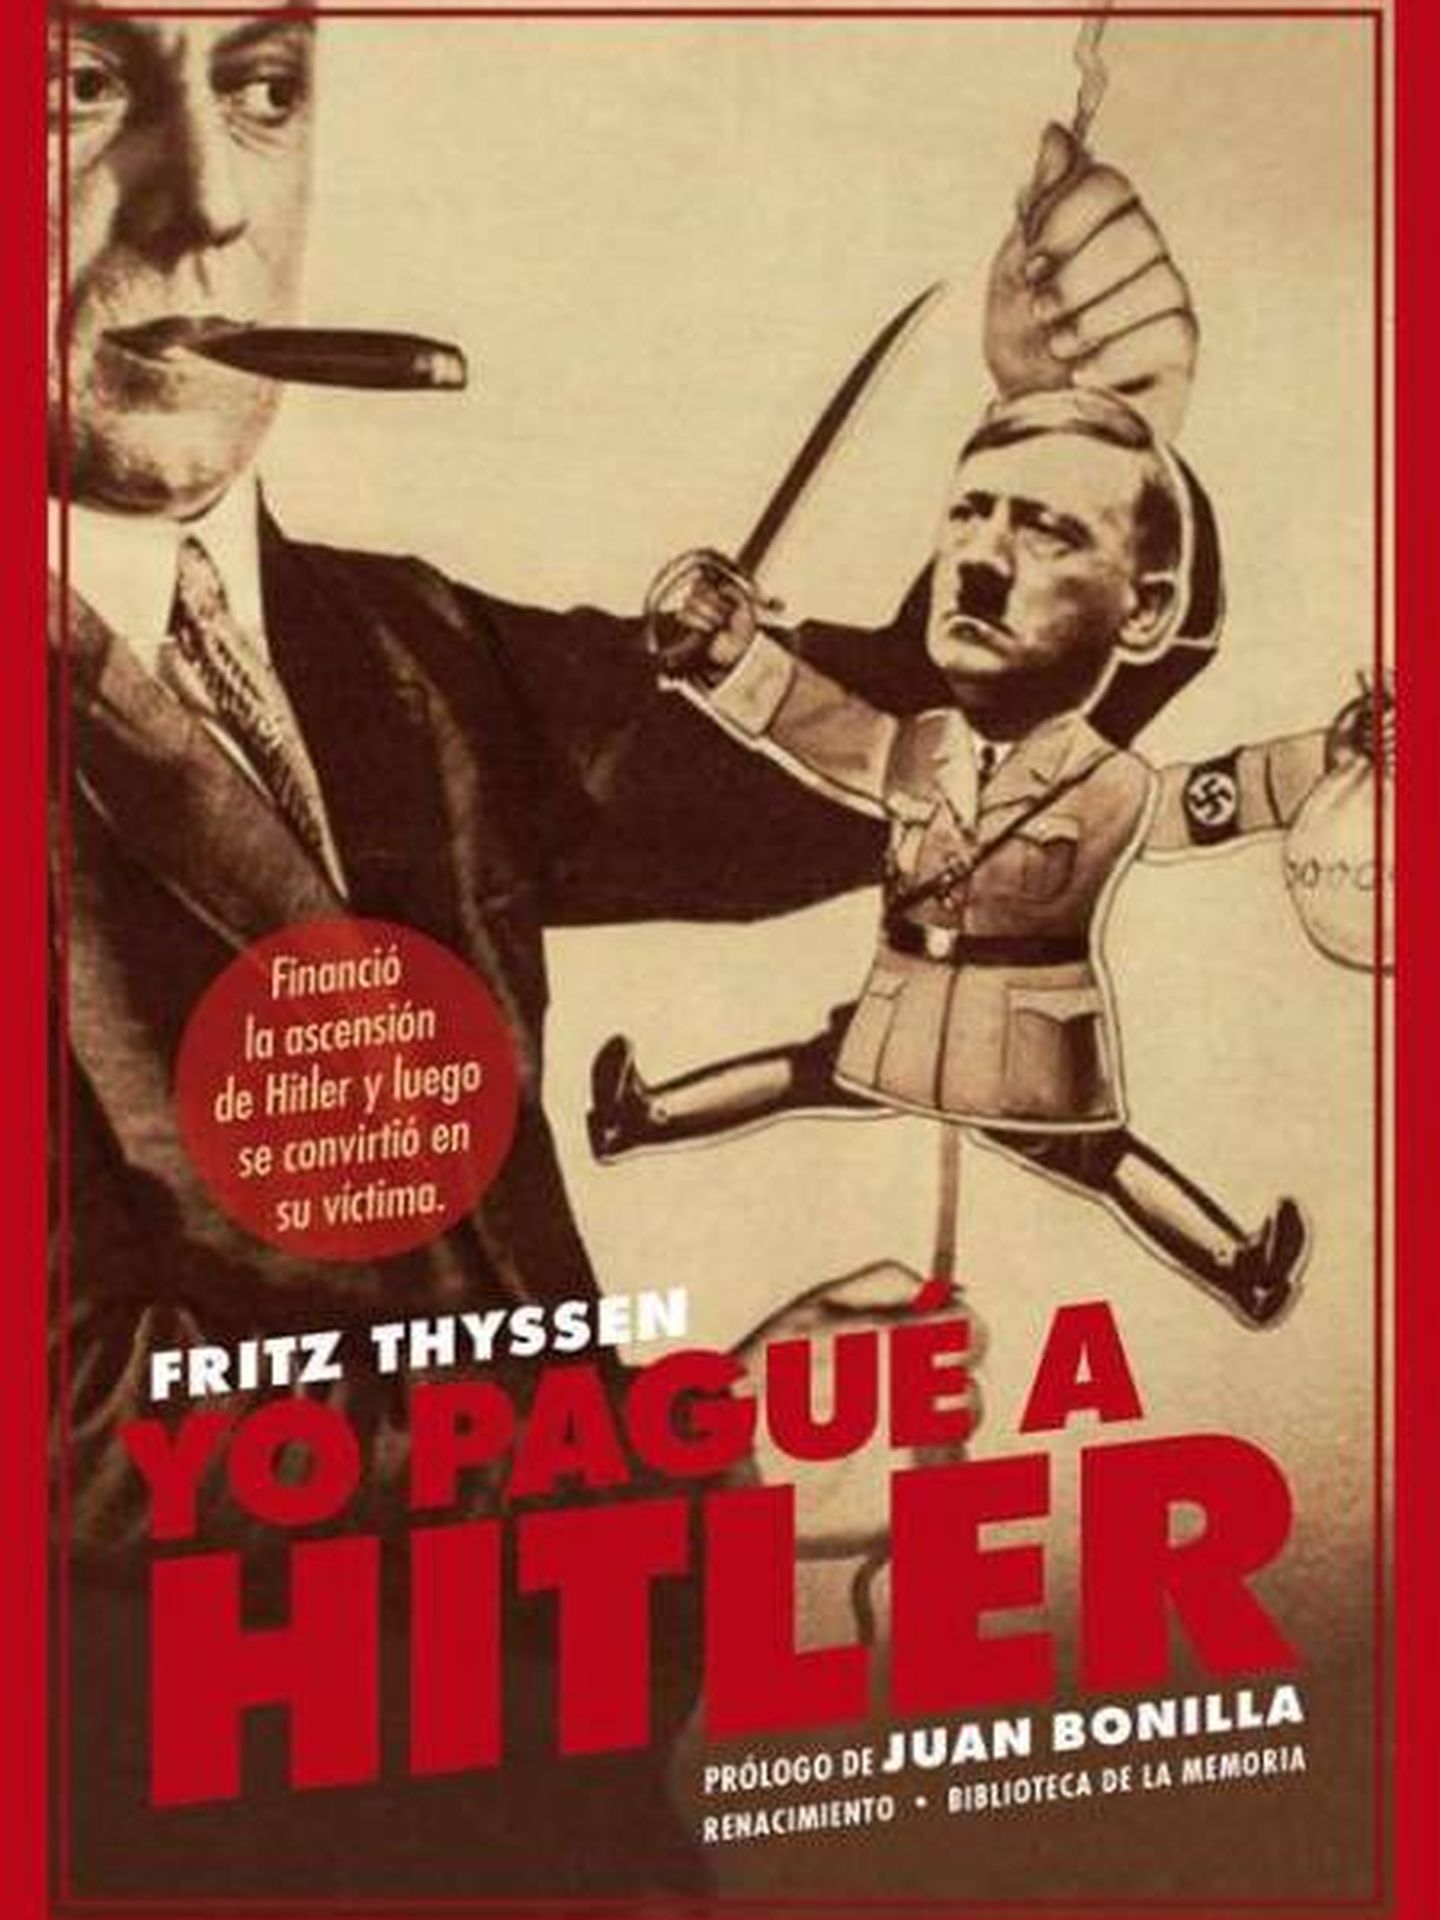 'Yo pagué a Hitler'. (Renacimiento)